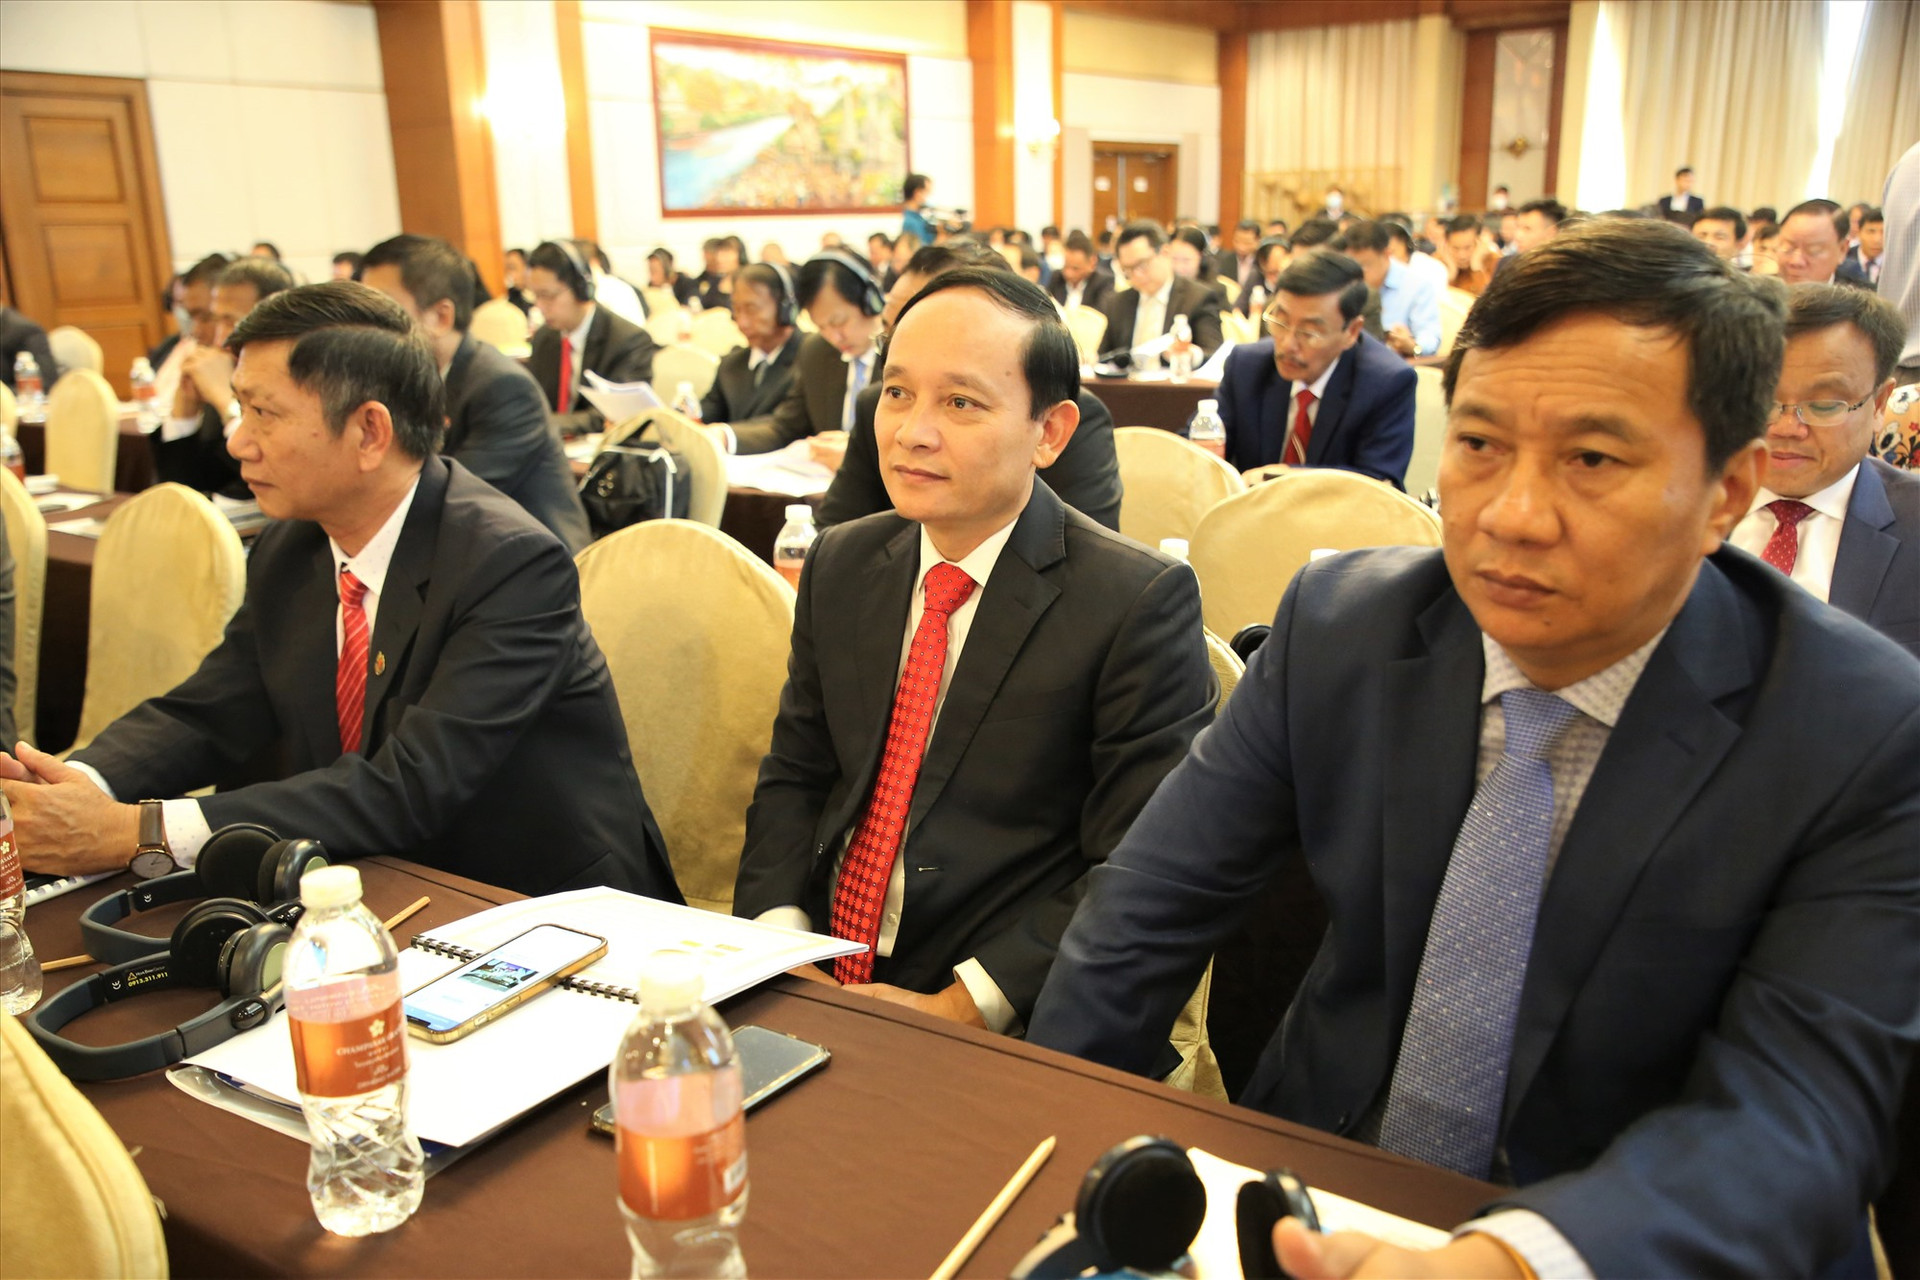 Đông đảo doanh nghiệp, các nhà đầu tư có tiềm năng của Quảng Nam tham dự hội nghị. Ảnh: A.N